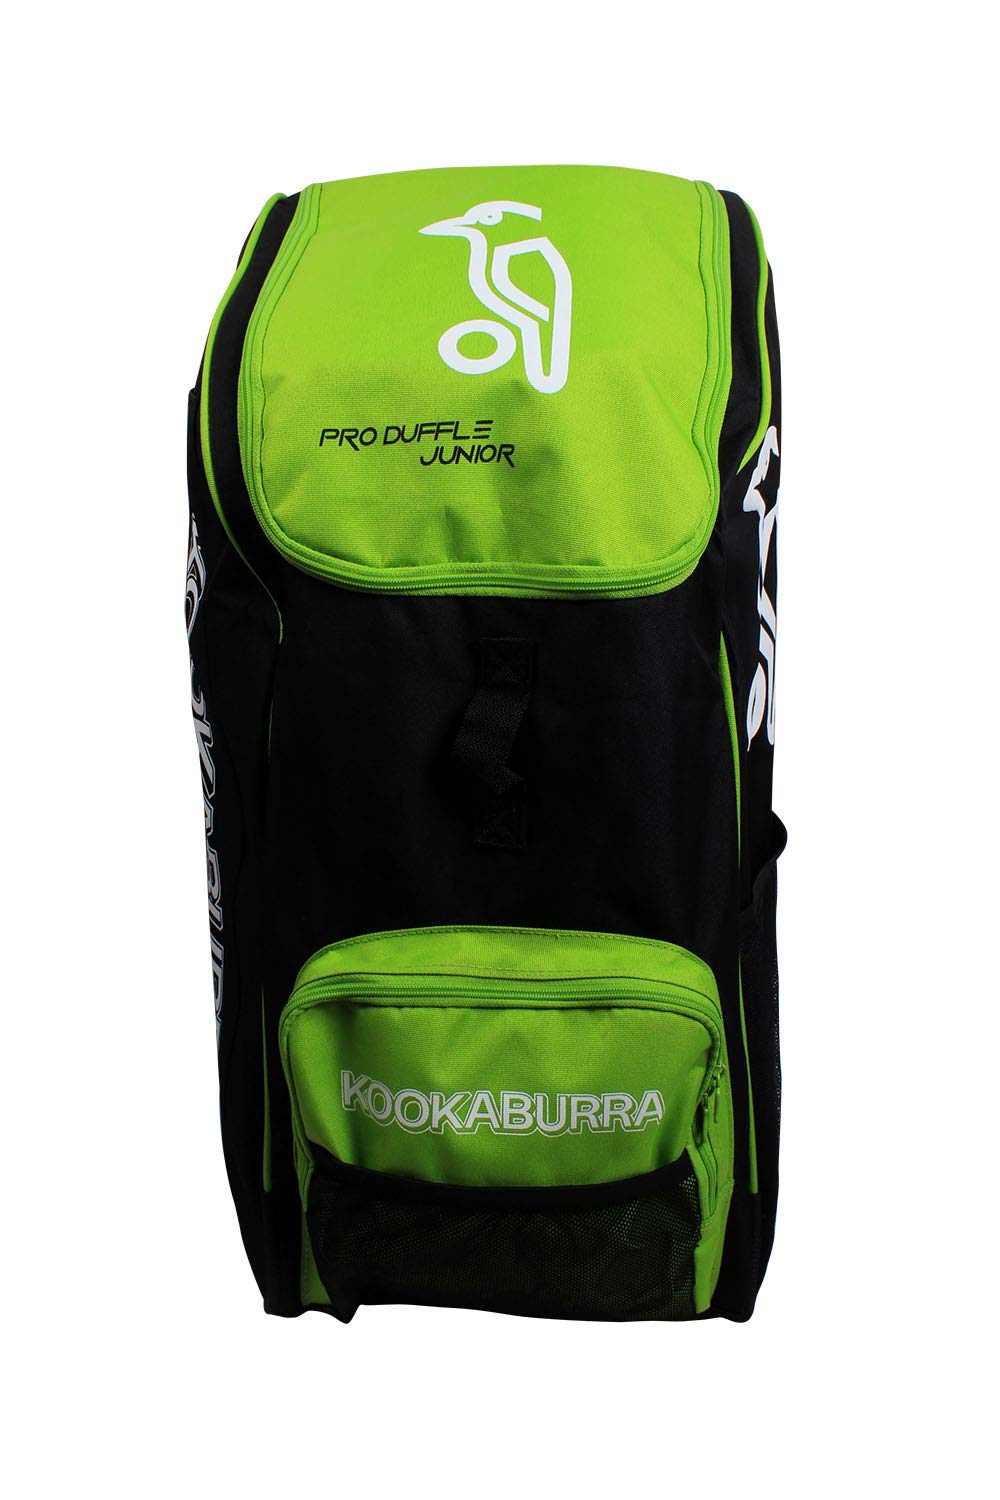 Buy Legend Self Pack Cricket Kit Bag Online